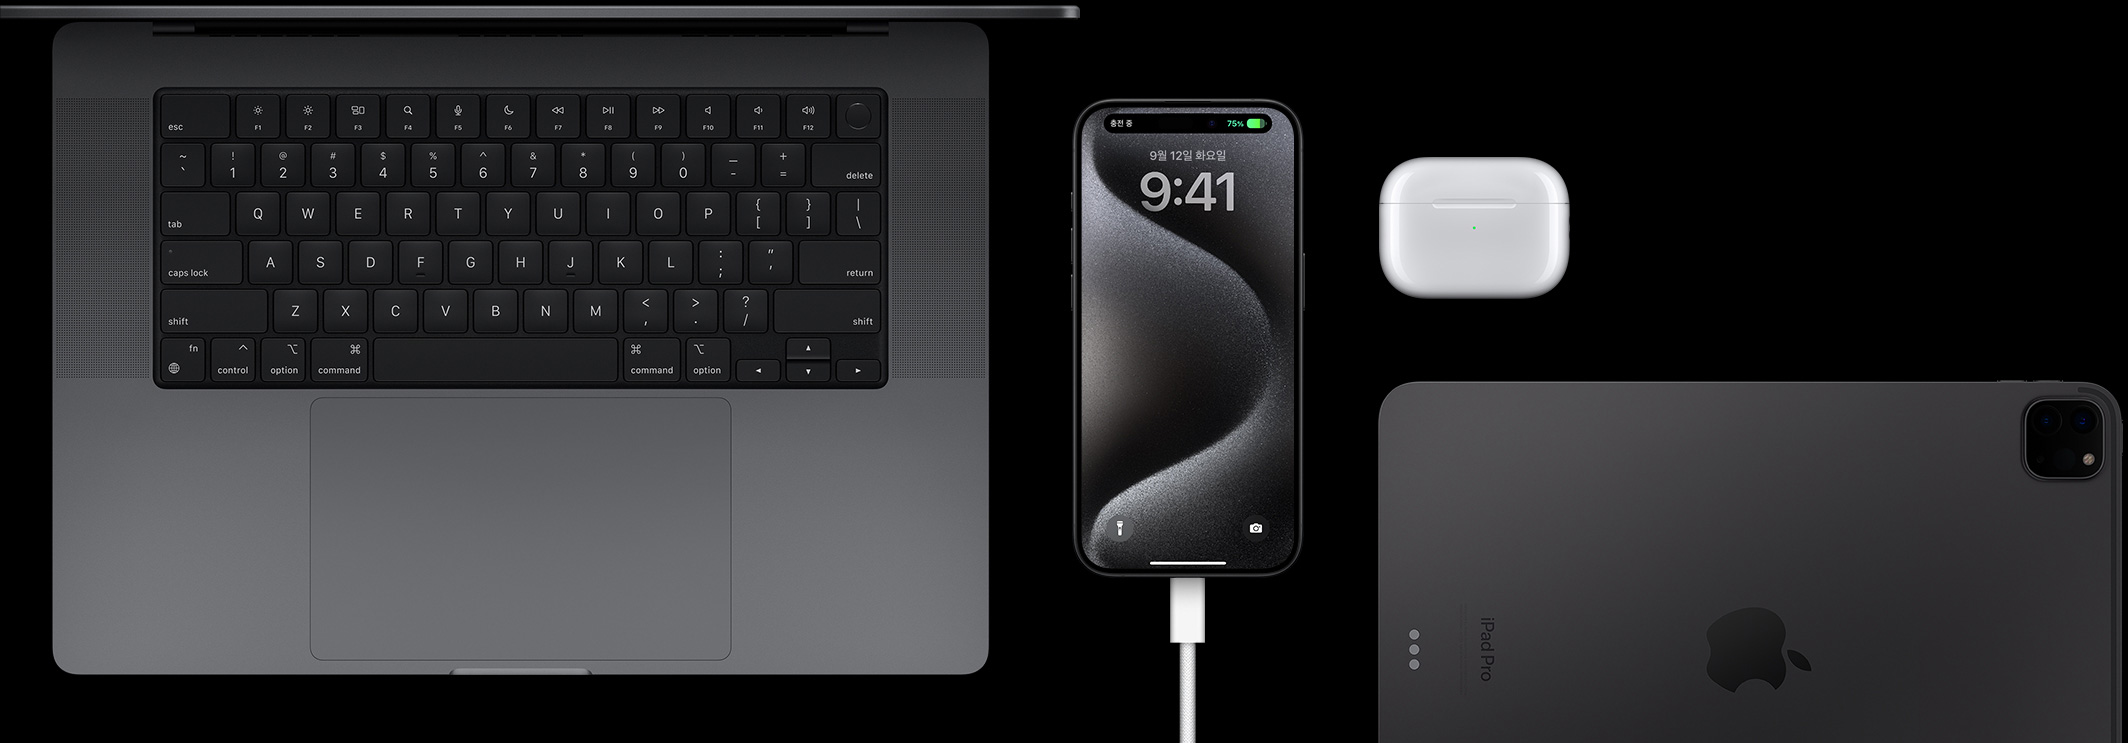 USB-C 케이블이 연결된 iPhone 15 Pro 주변에 Macbook Pro, AirPods Pro, iPad를 함께 놓아둔 모습